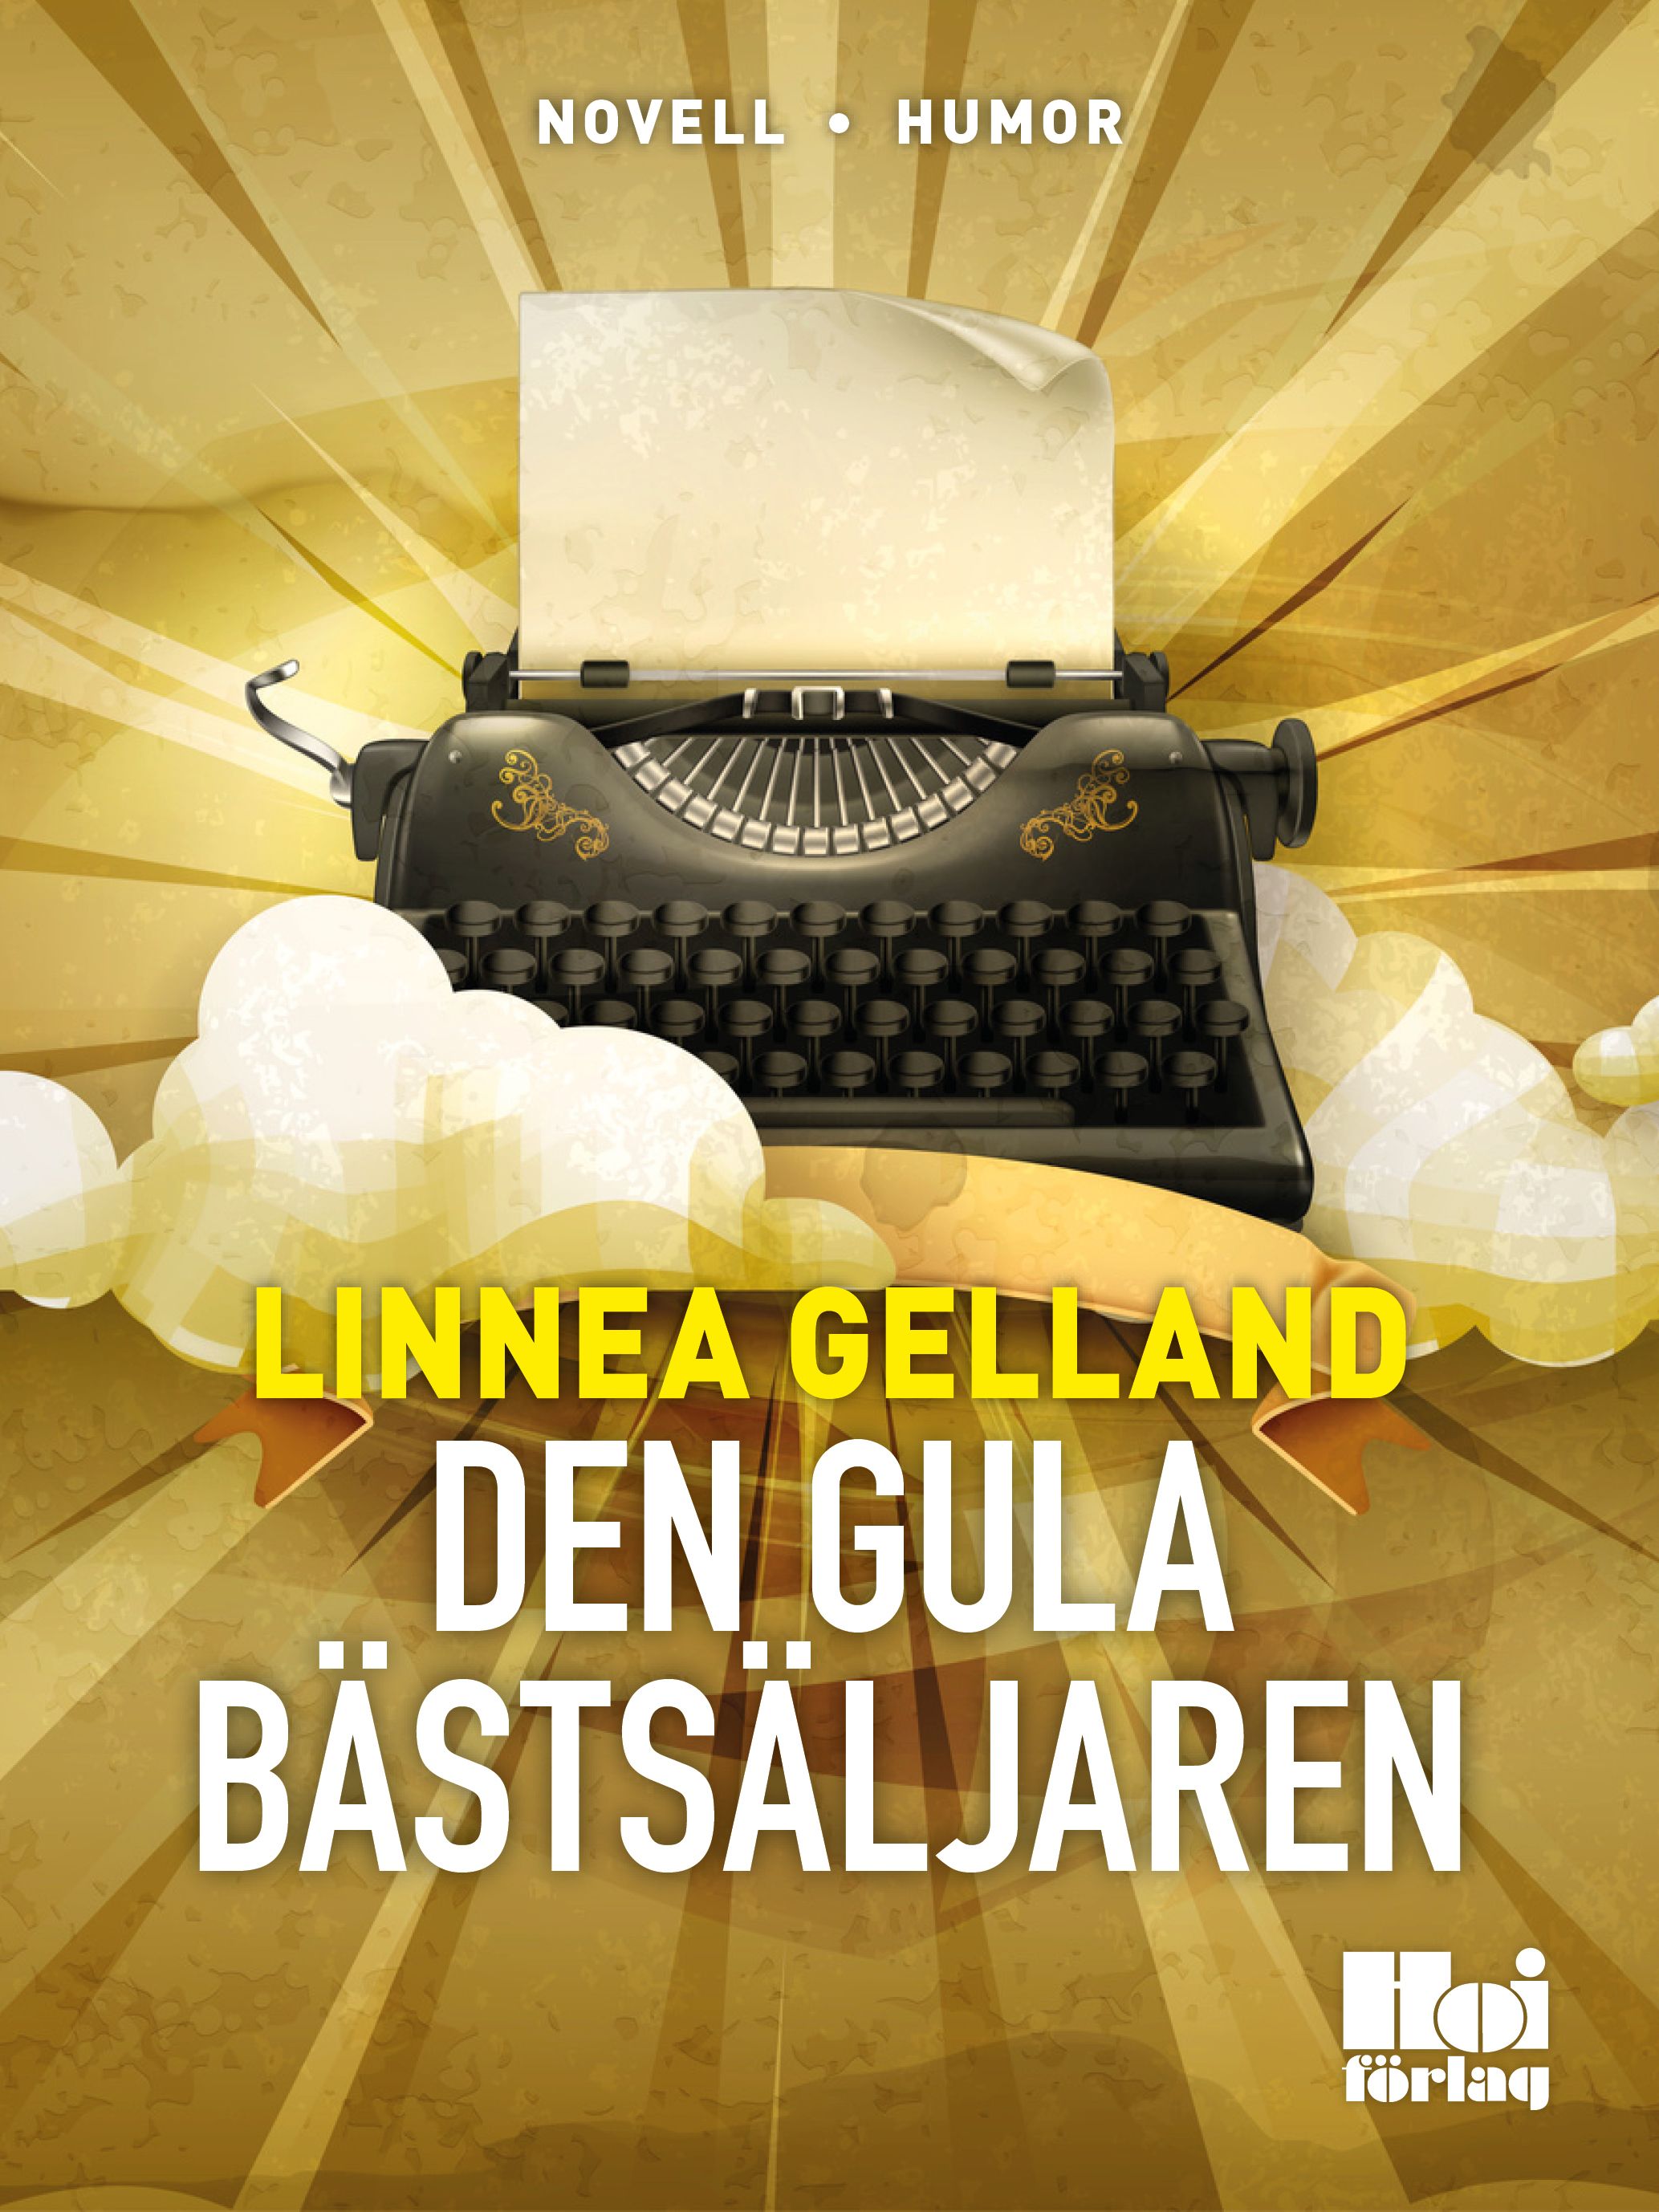 Den gula bästsäljaren, e-bok av Linnea Gelland